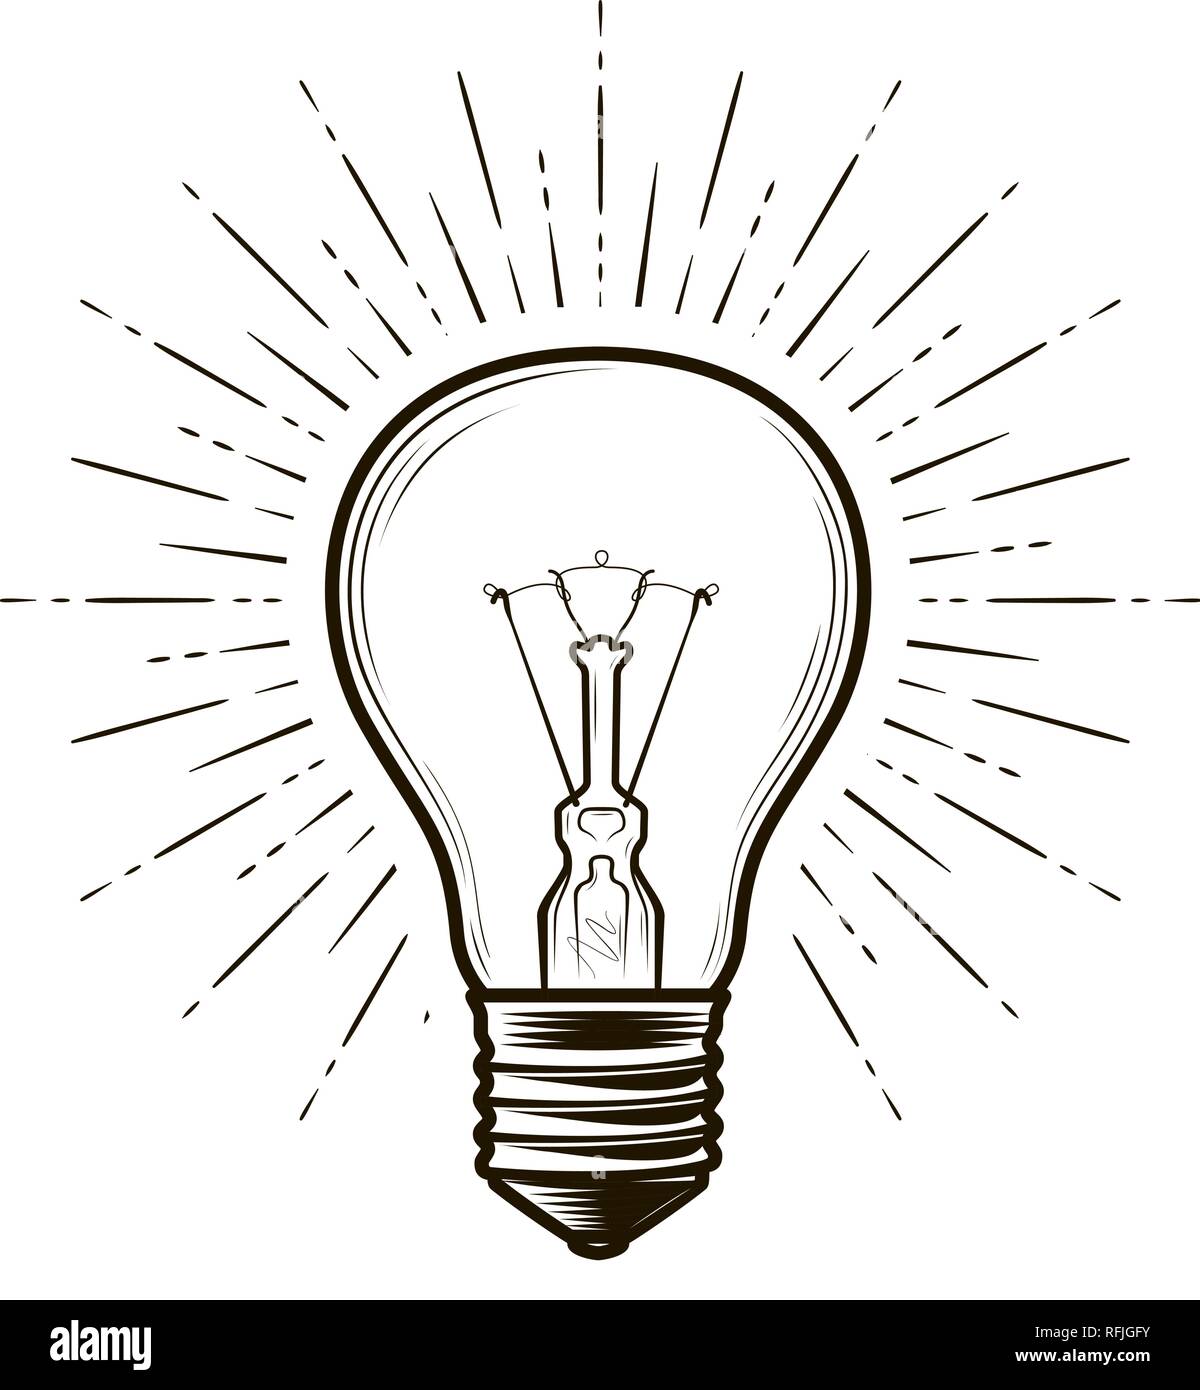 Lampe, Lampe Skizze. Strom, elektrisches Licht, Energiekonzept. Hand Vector Illustration gezeichnet Stock Vektor